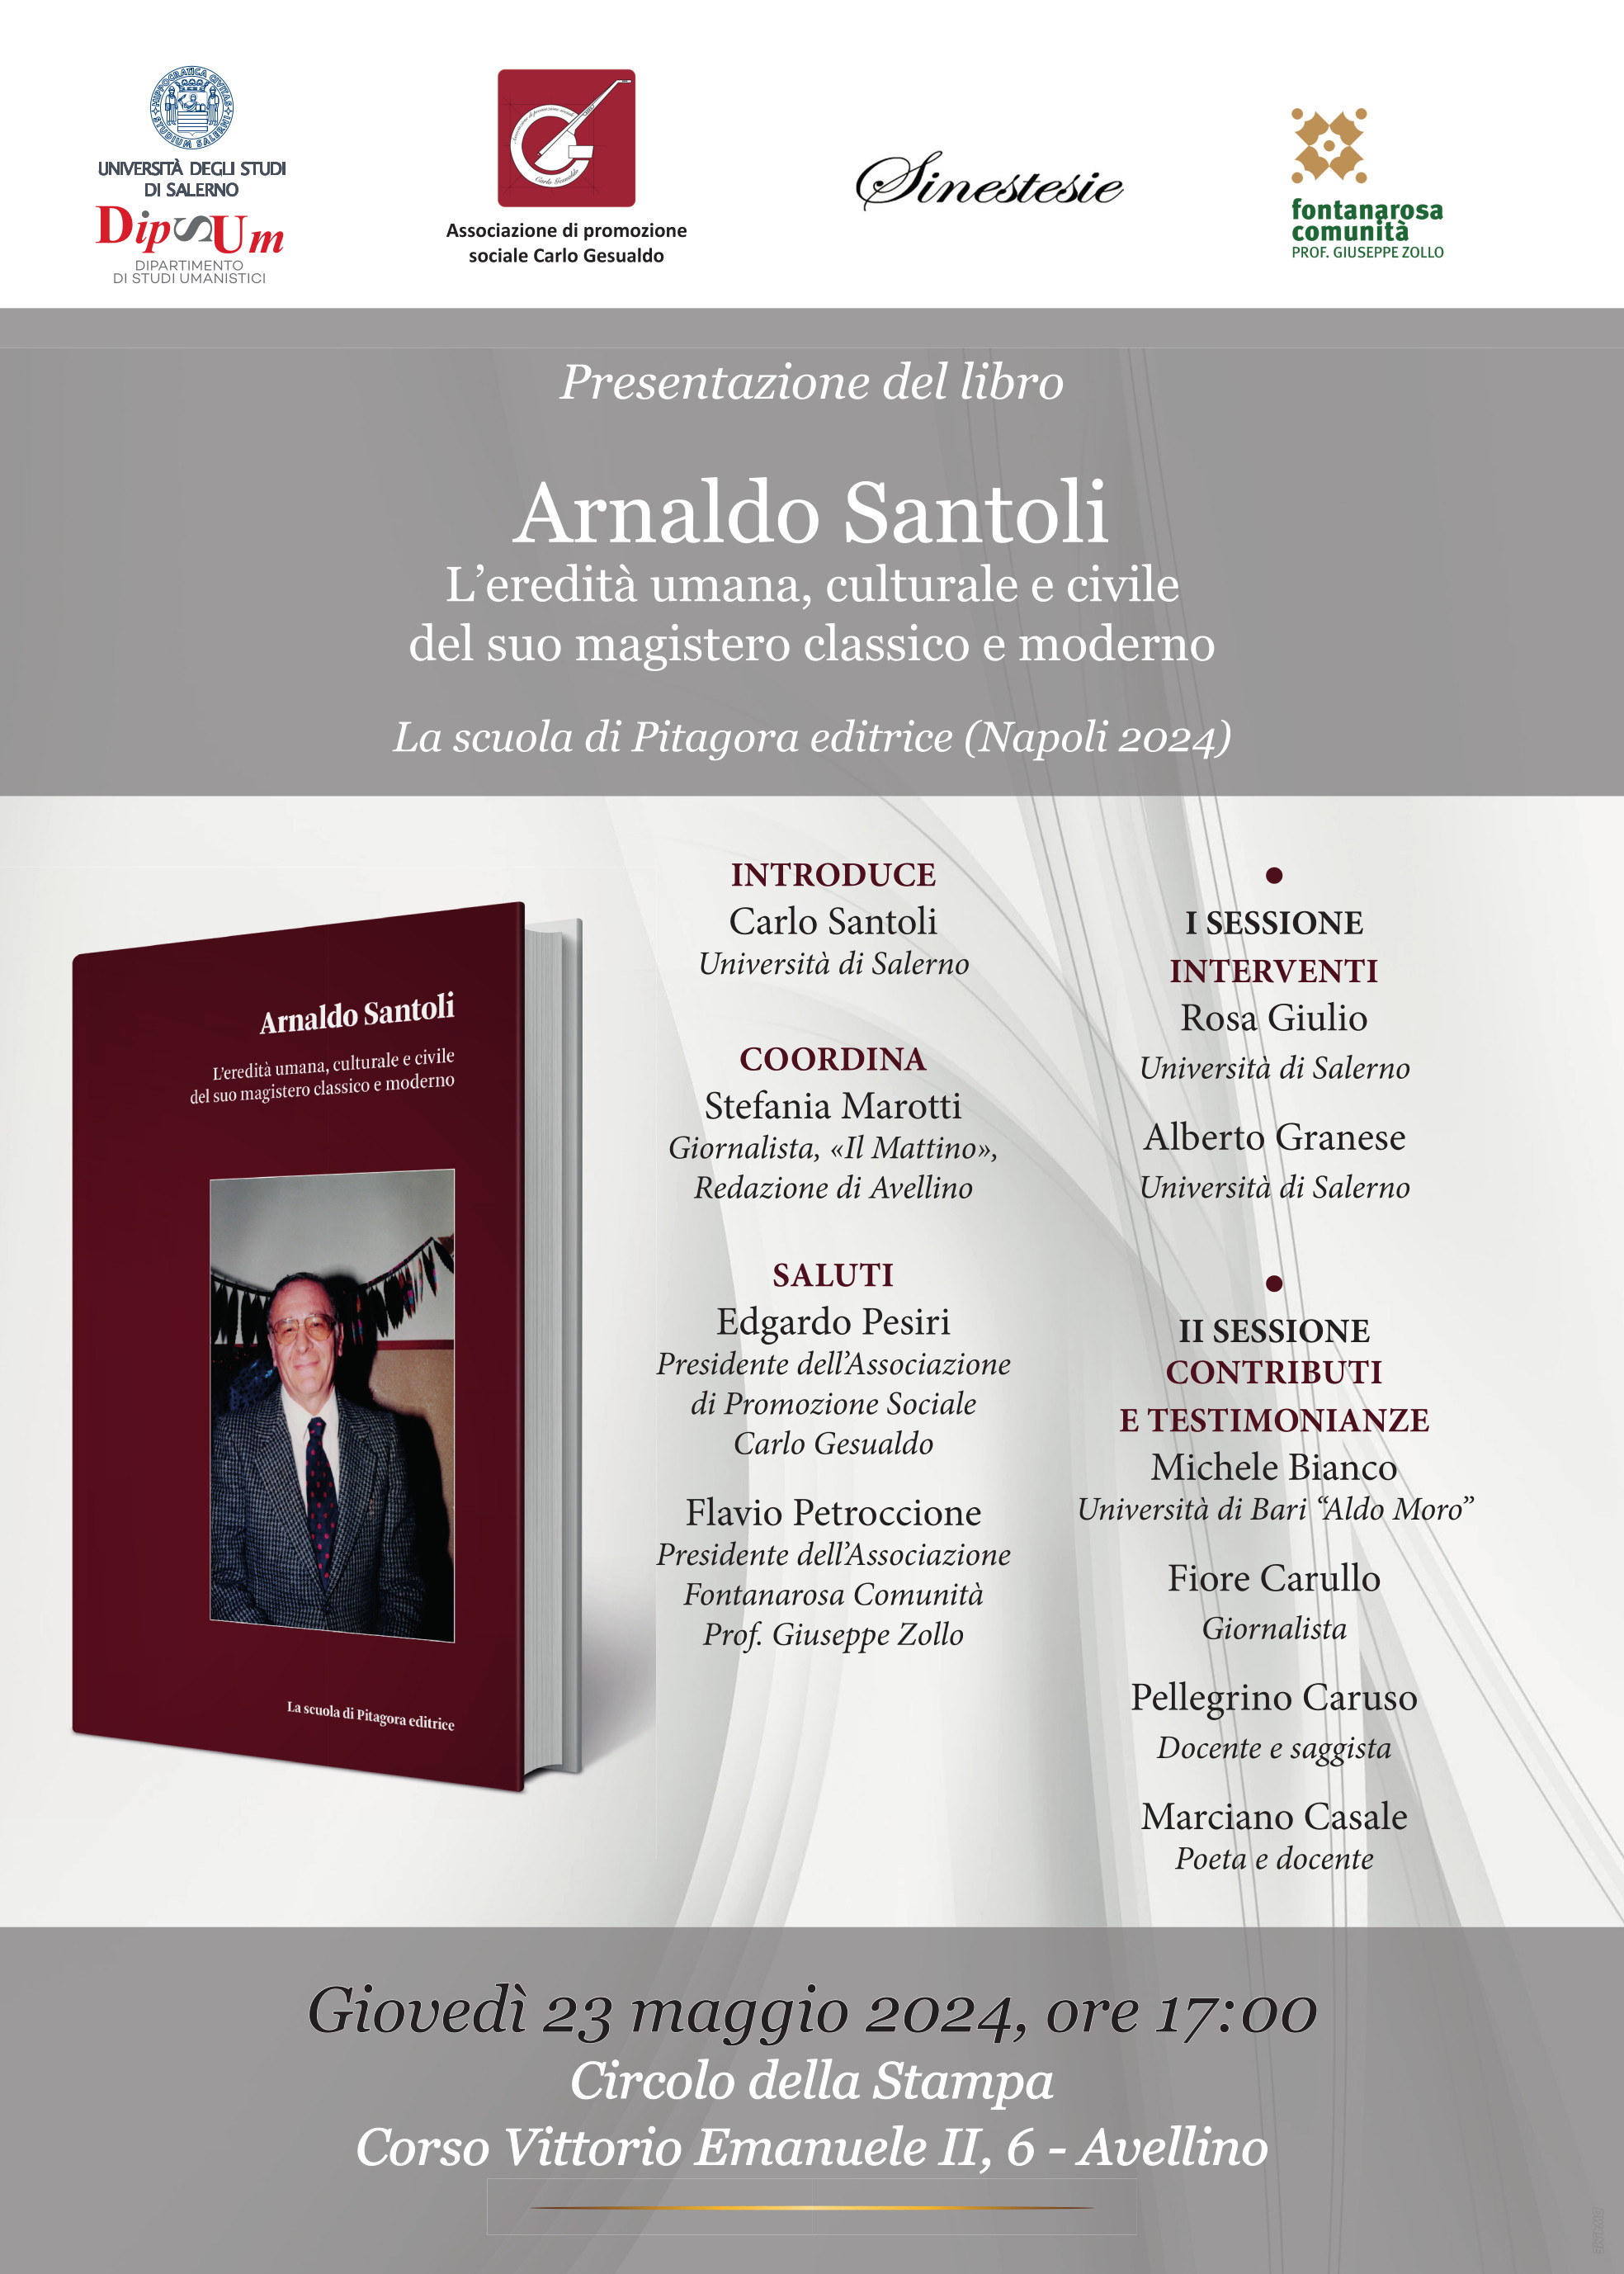 Arnaldo Santoli, L’eredità umana, culturale e civile del suo magistero classico e moderno